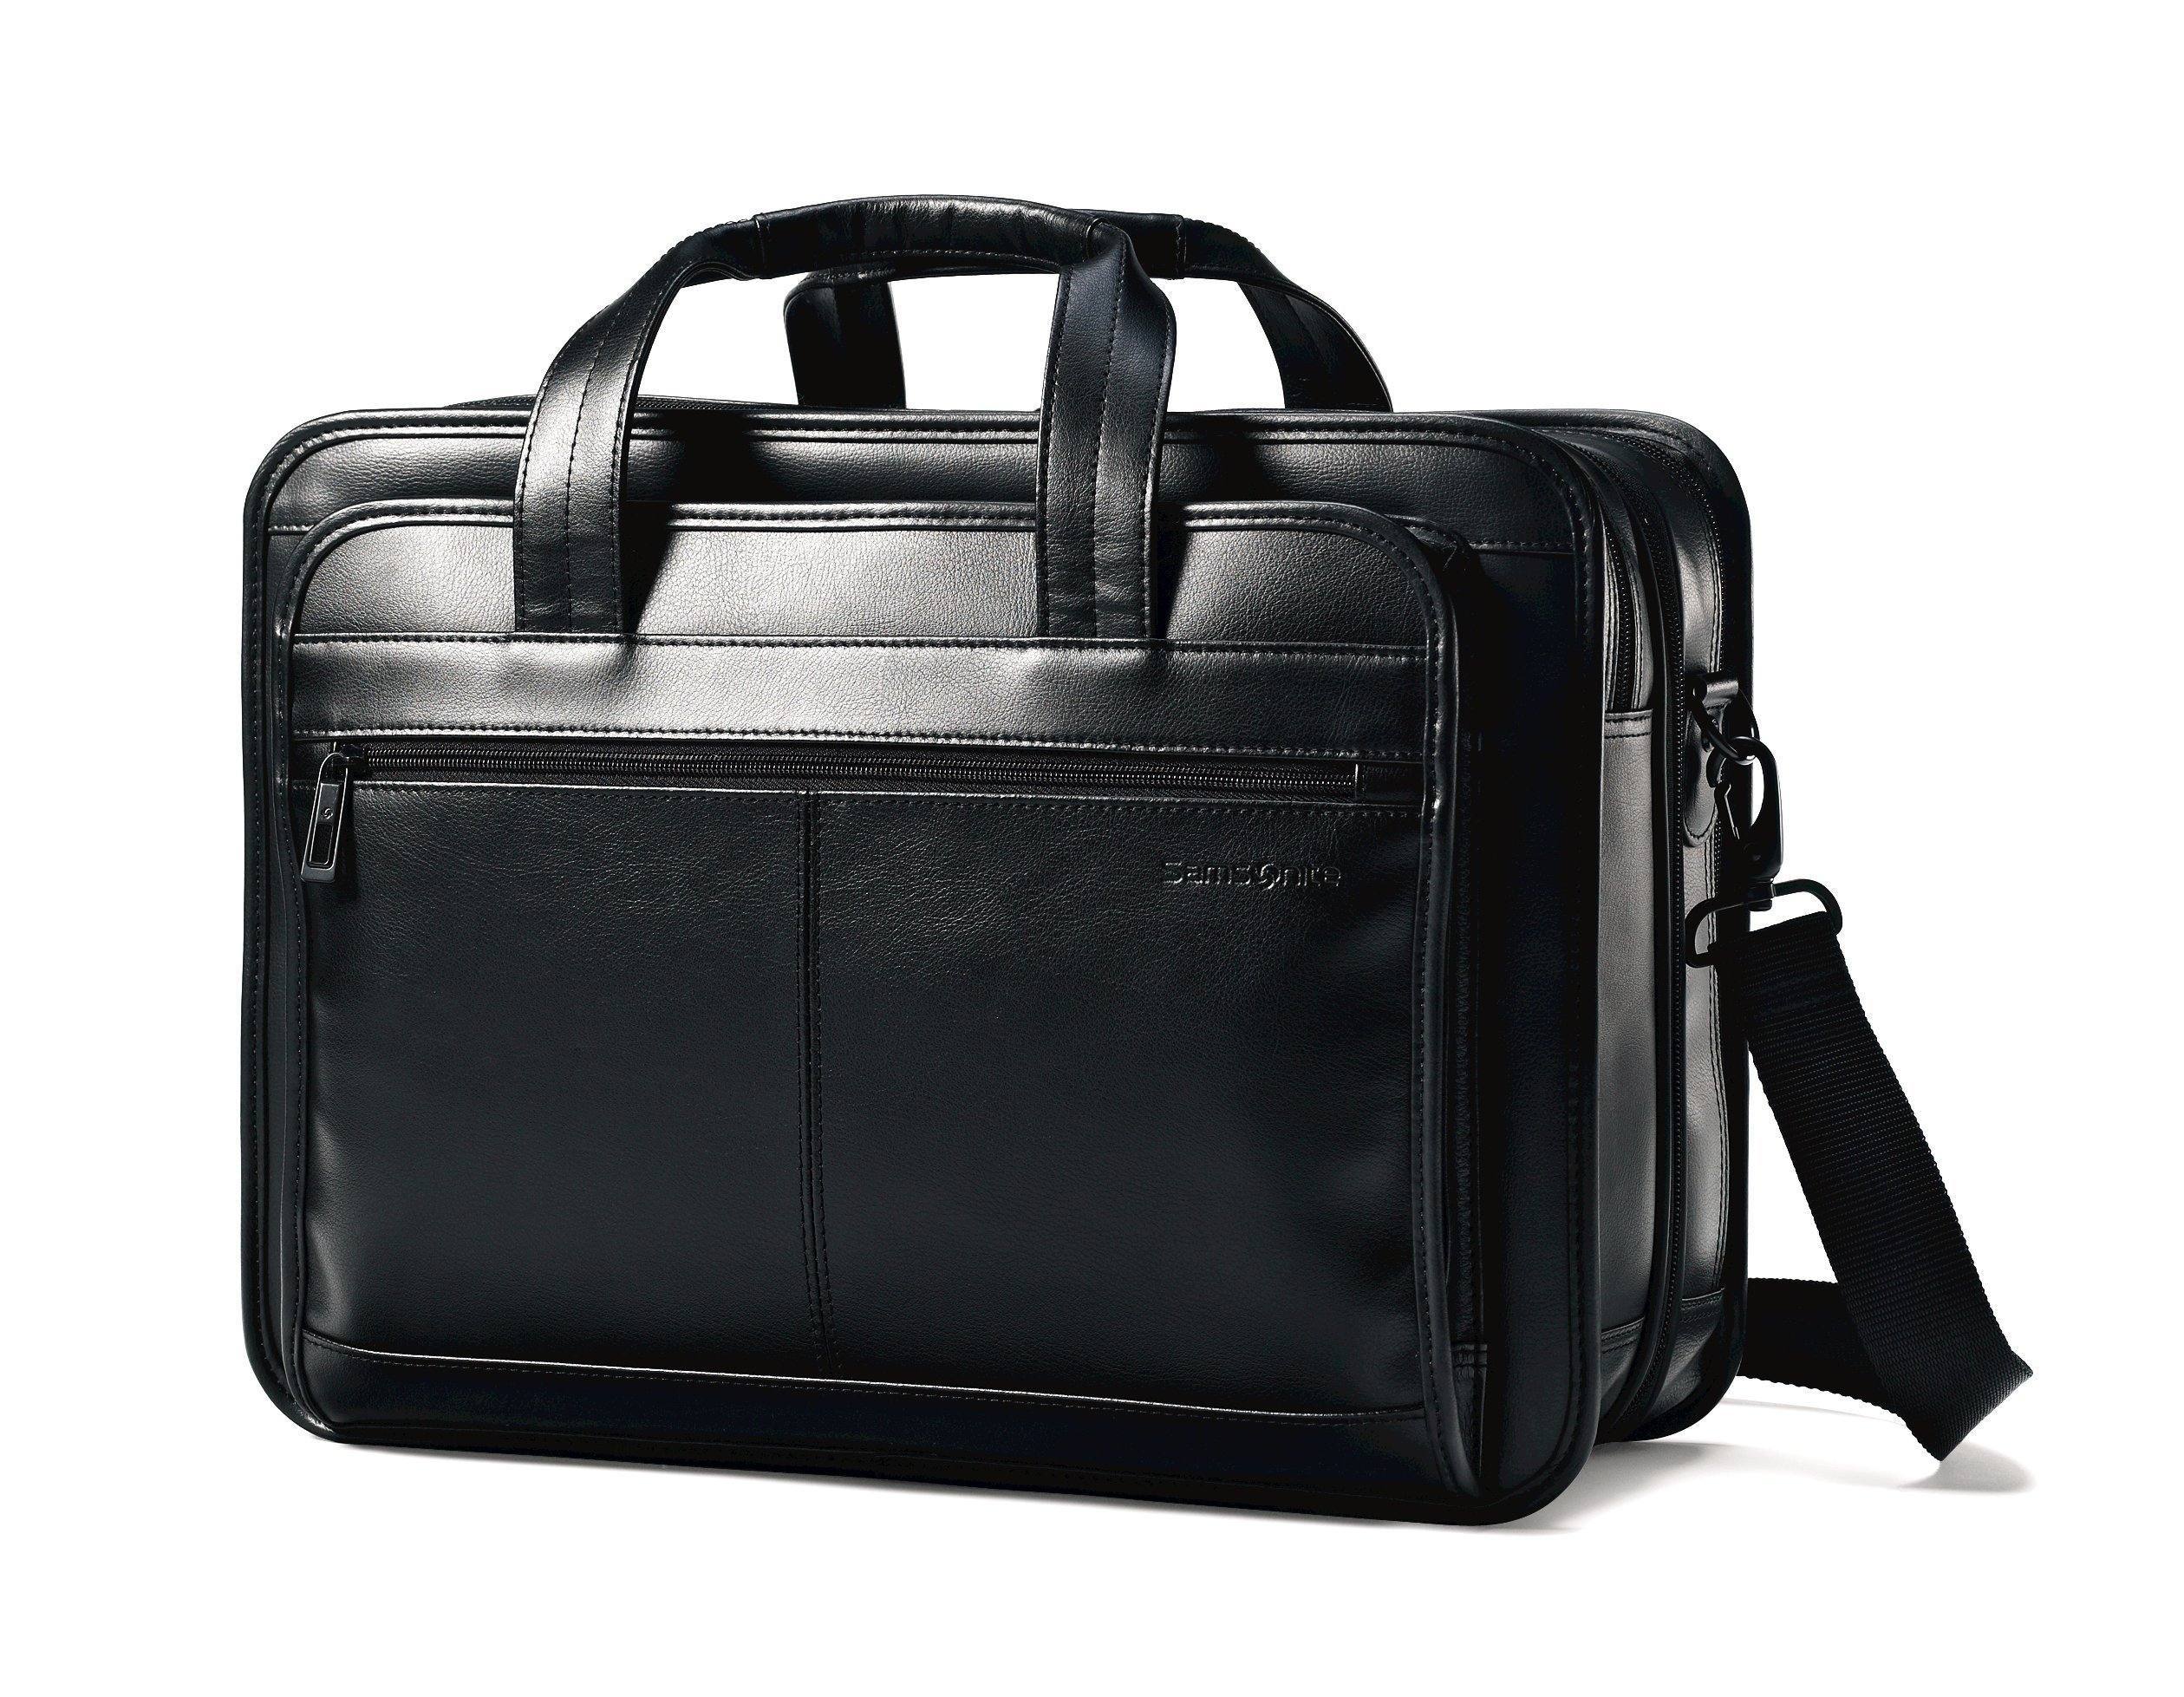 Franklin Covey Black Leather Planner Backpack Travel Adjustable Straps